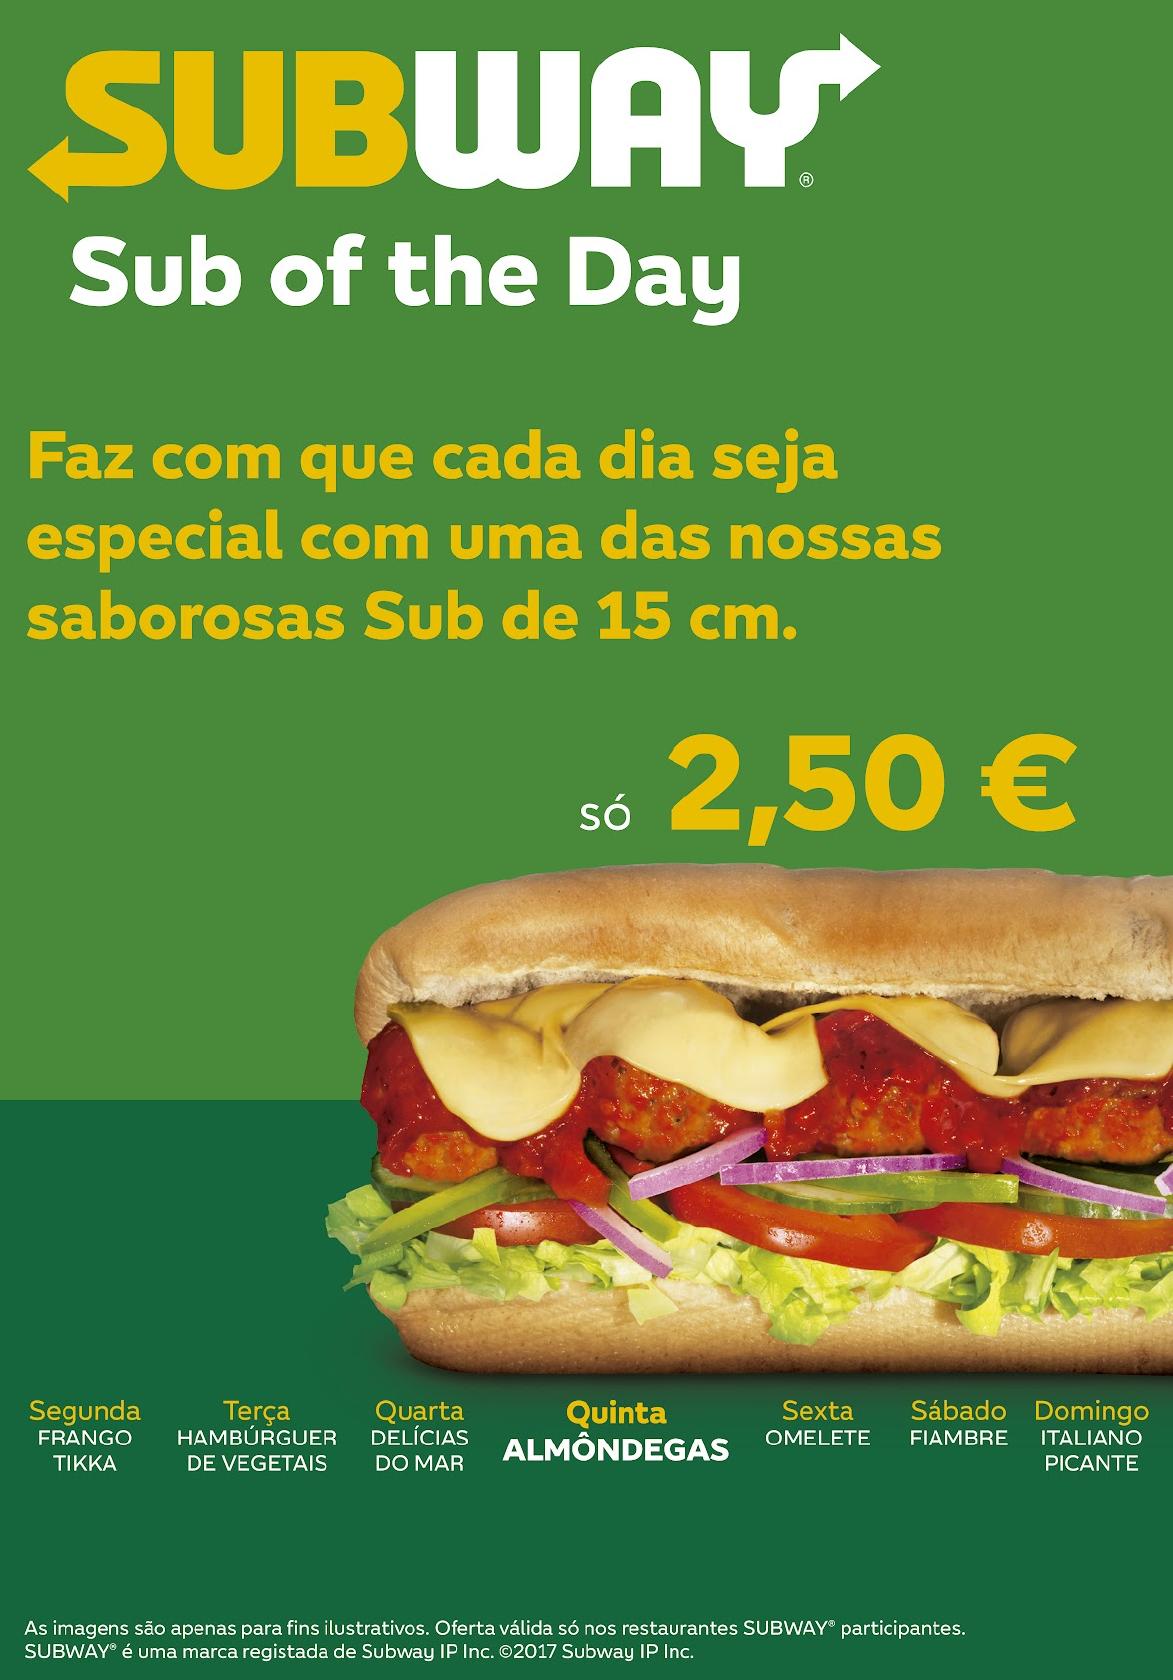 Subway Portugal - Sabias que podes pedir esta deliciosa SUB por apenas  2.50€? Aqui está a nossa SUB do dia, qual será a de amanhã? 😉